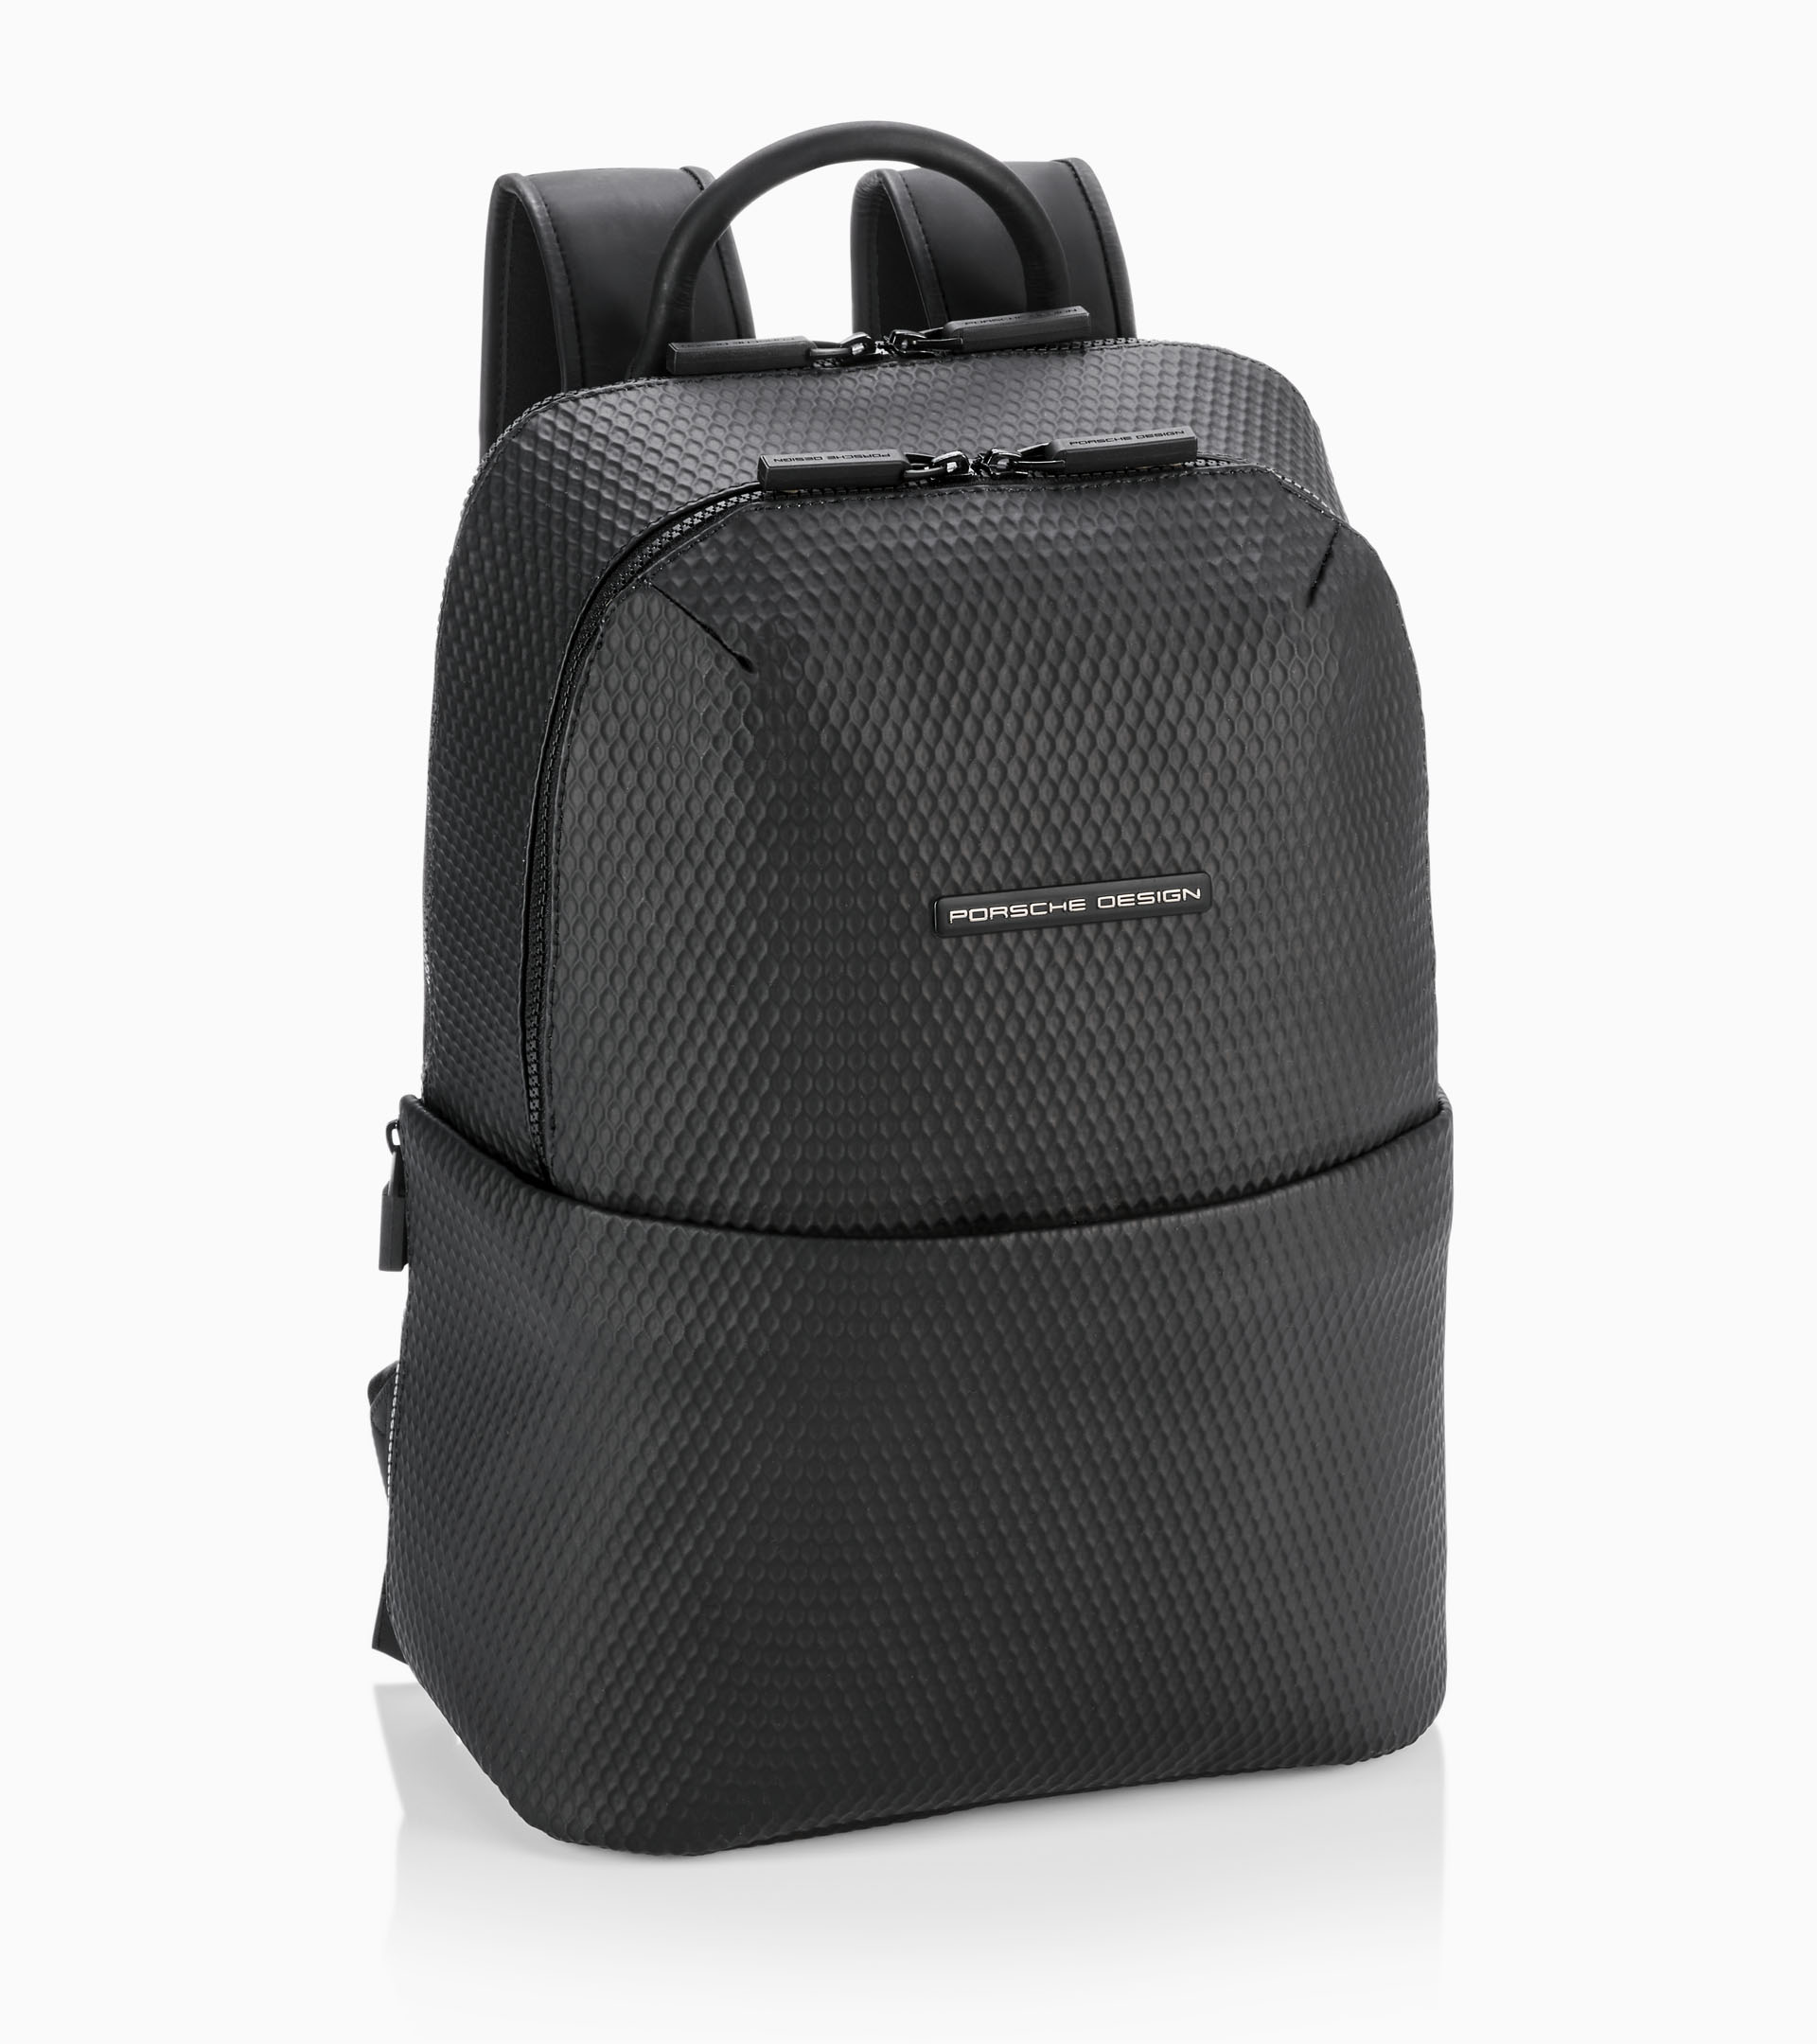 Roadster Nylon Backpack S2 - Business Backpack for Men | Porsche ...